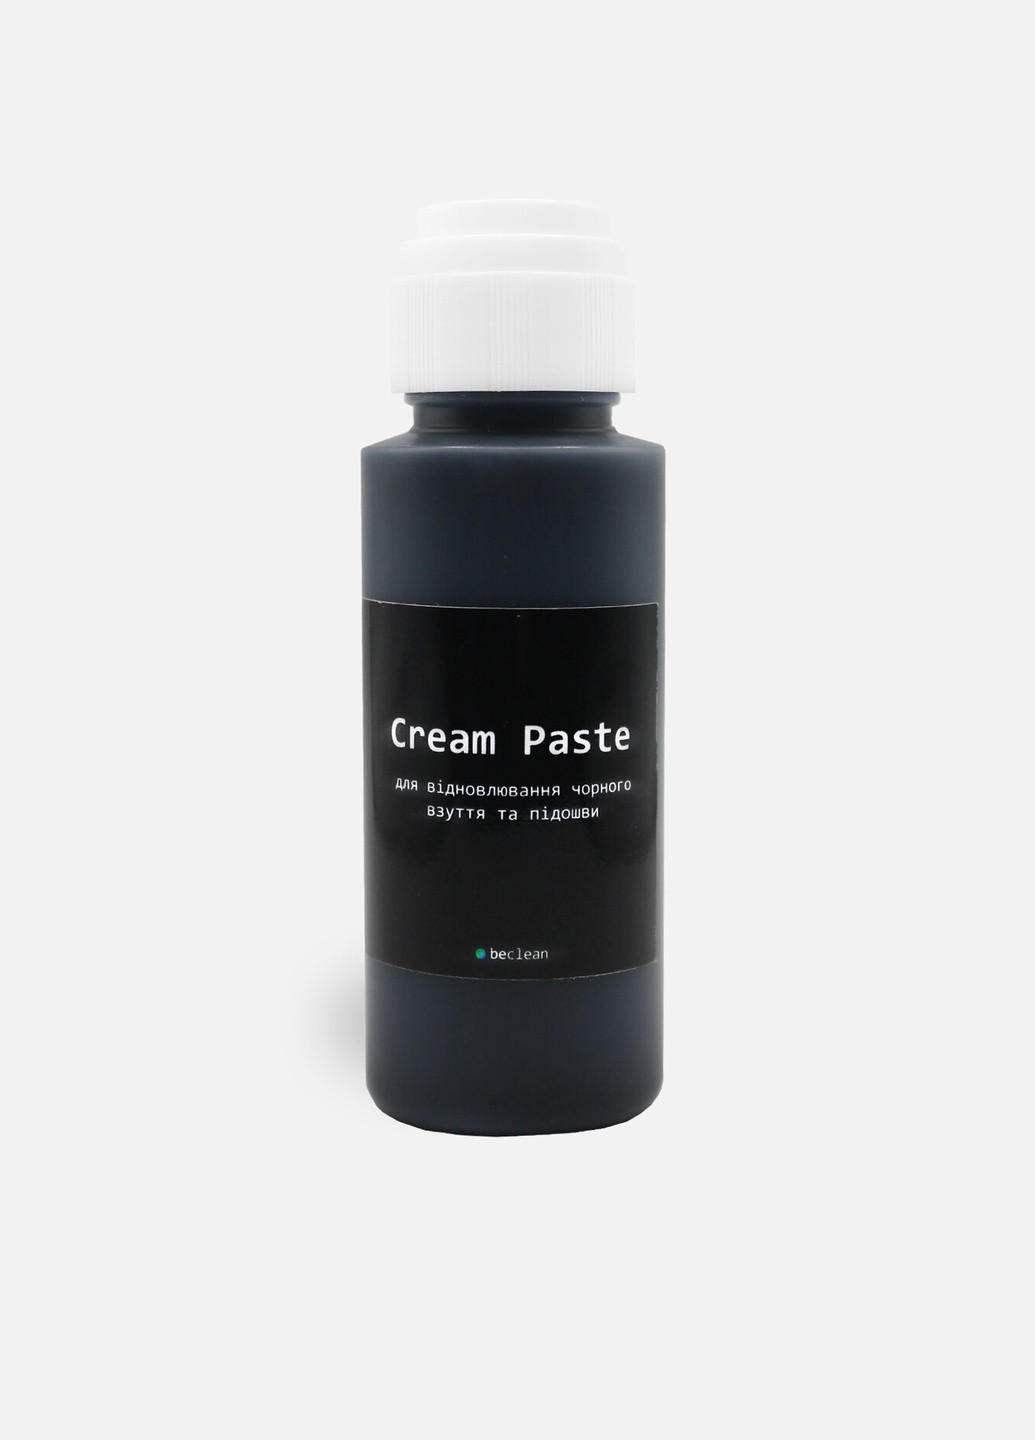 CREAM PASTE - Паста для восстановления белой подошвы и белой кожаной обуви Beclean